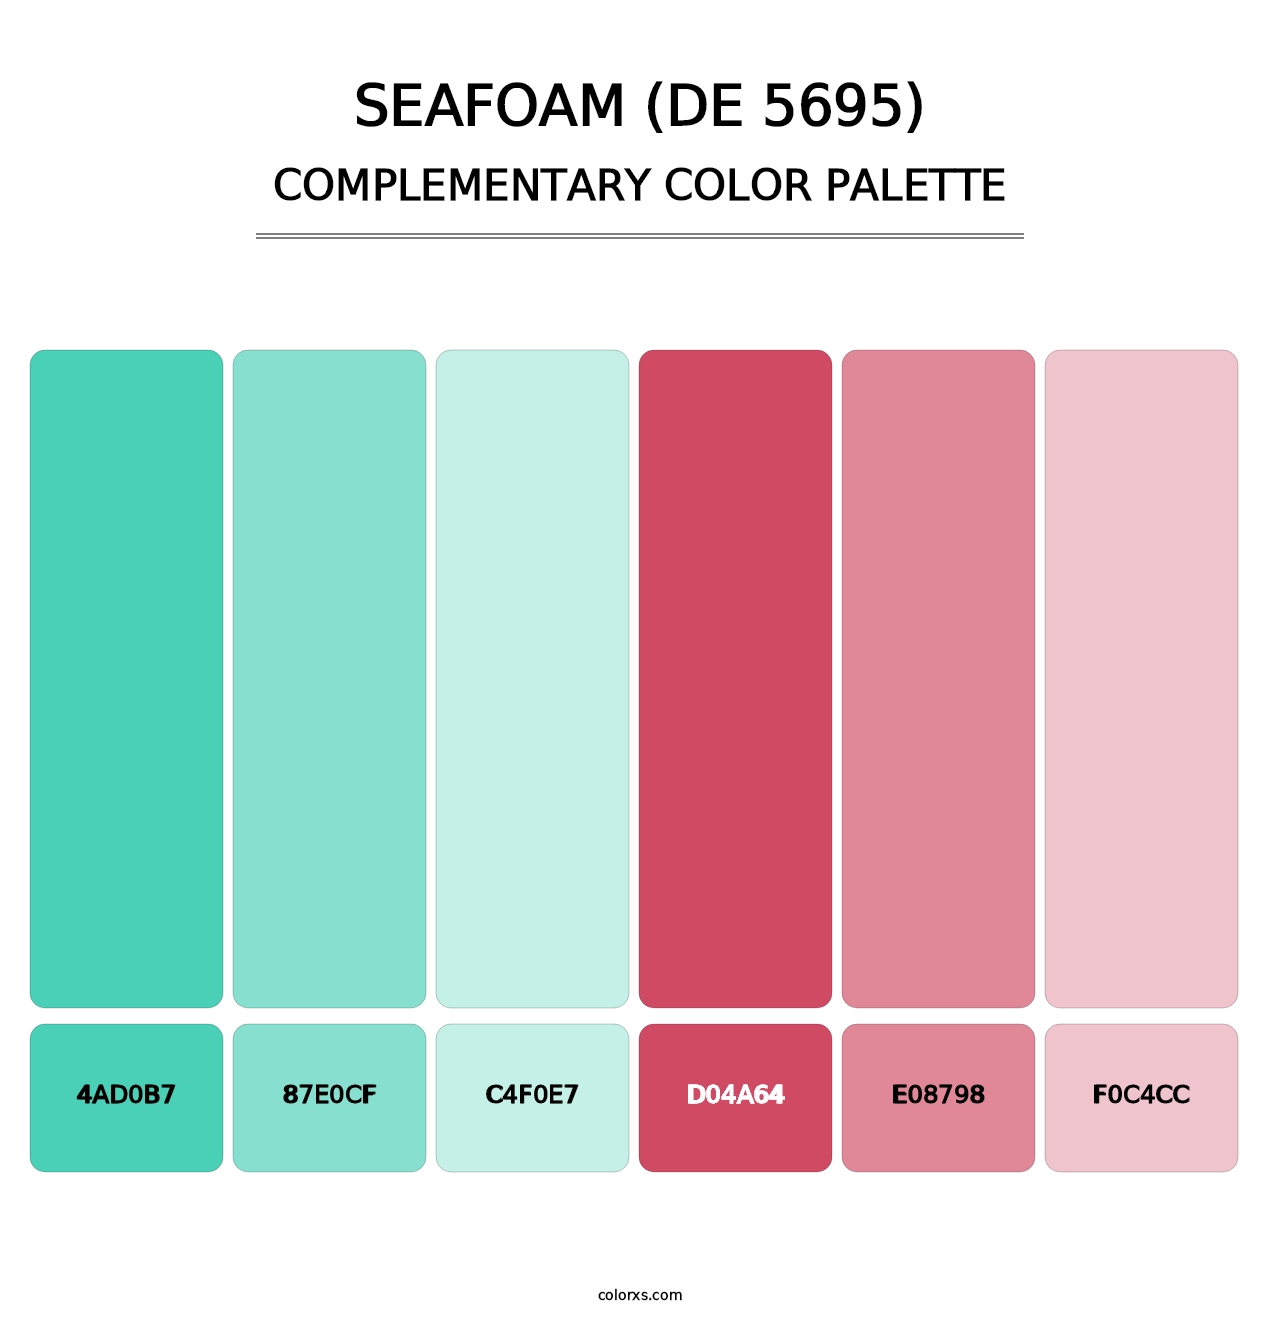 Seafoam (DE 5695) - Complementary Color Palette